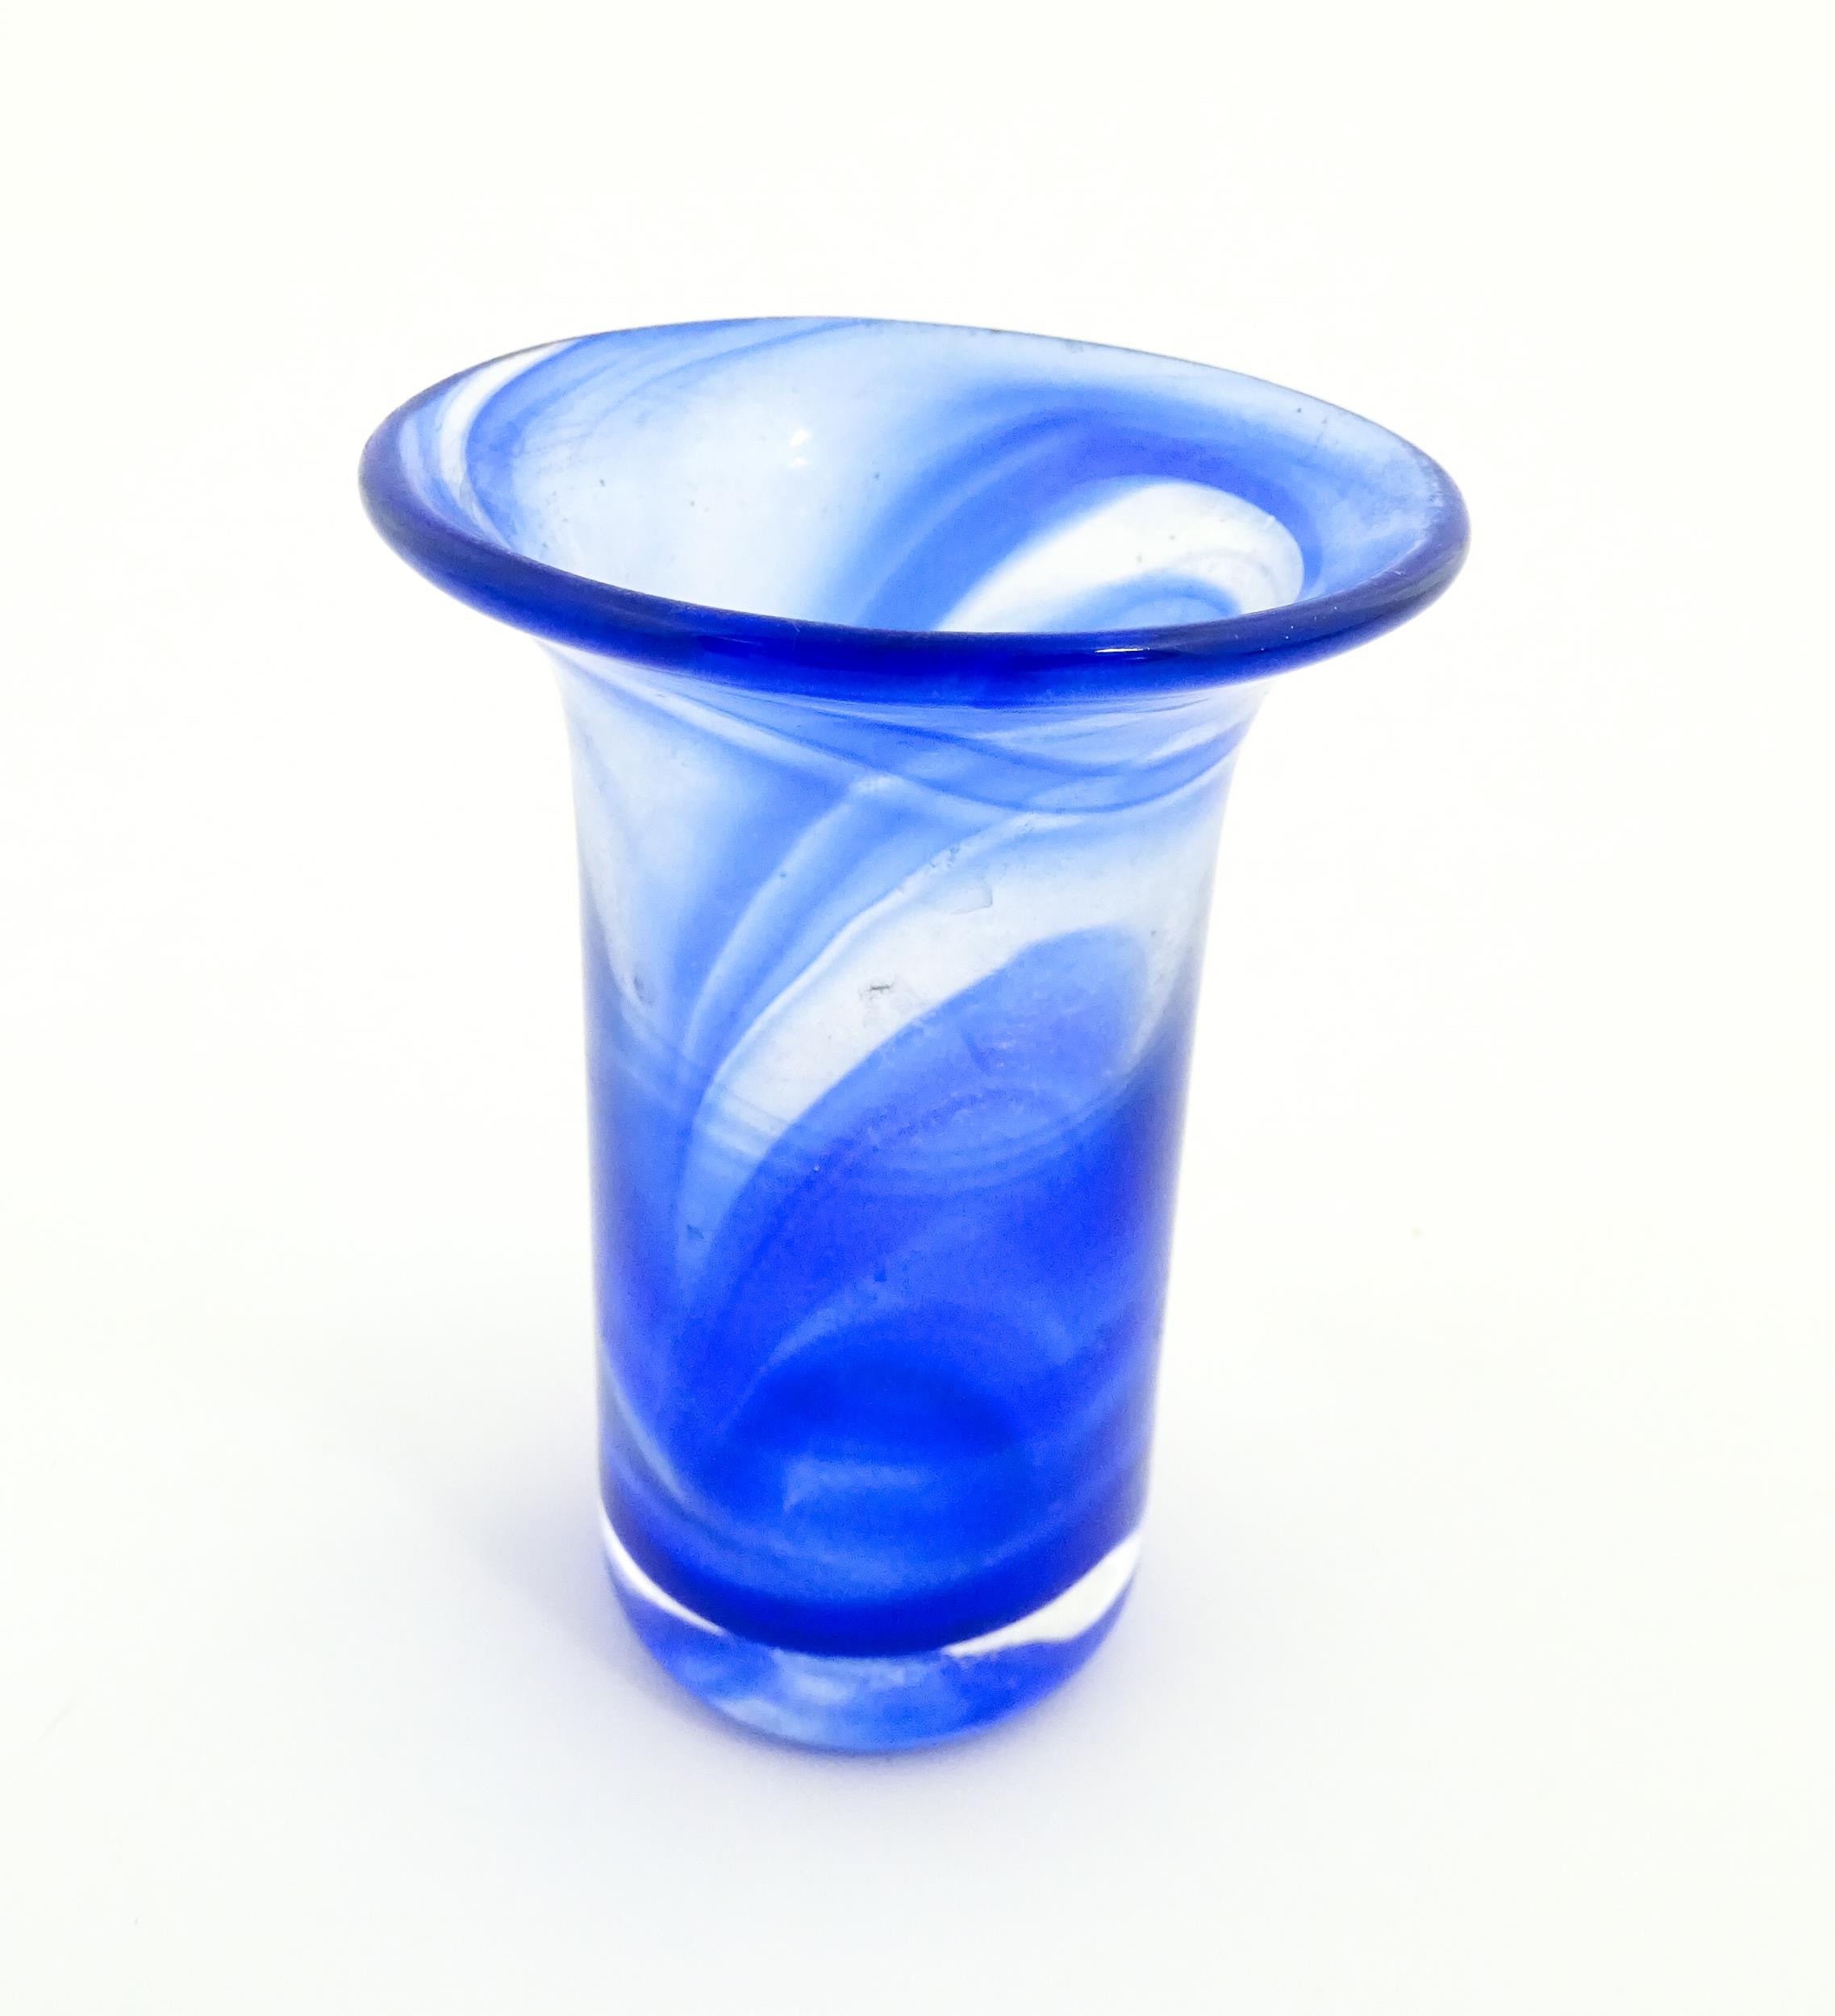 A Swedish Vas Vitreum blue glass vase with flared rim, signed under Vas Vitreum Sweden. Approx. 4 - Image 4 of 6